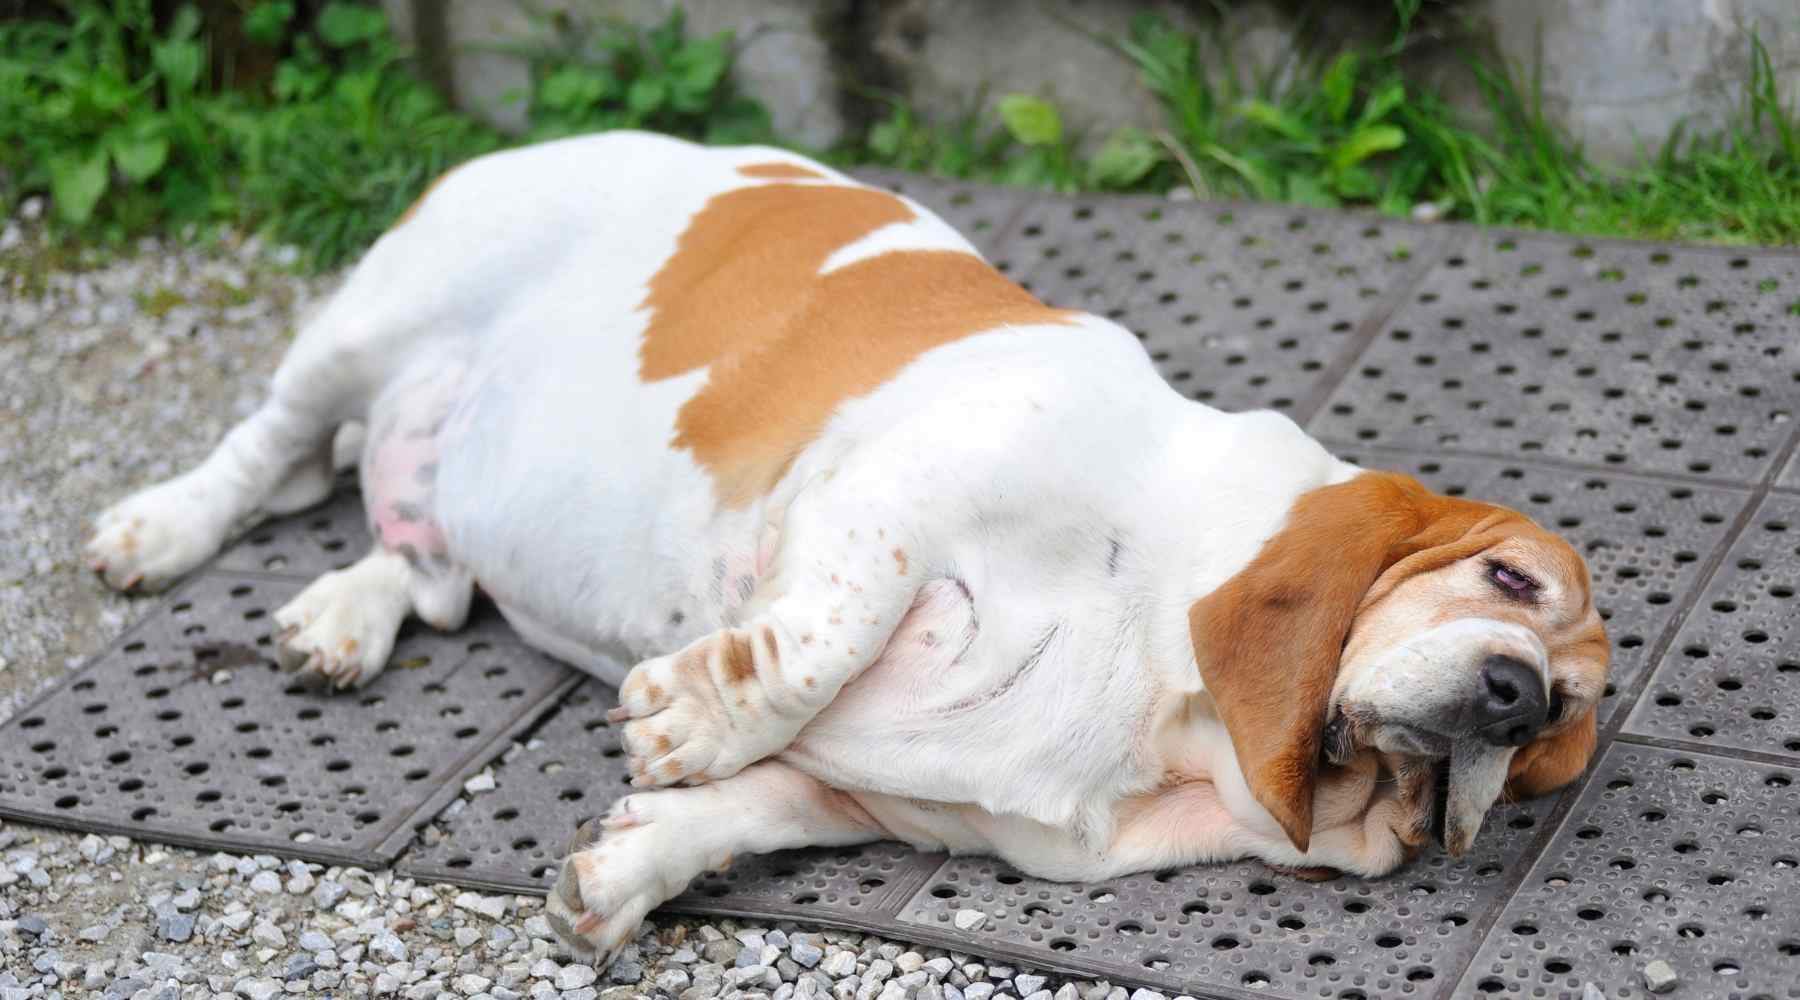 An overweight Basset Hound